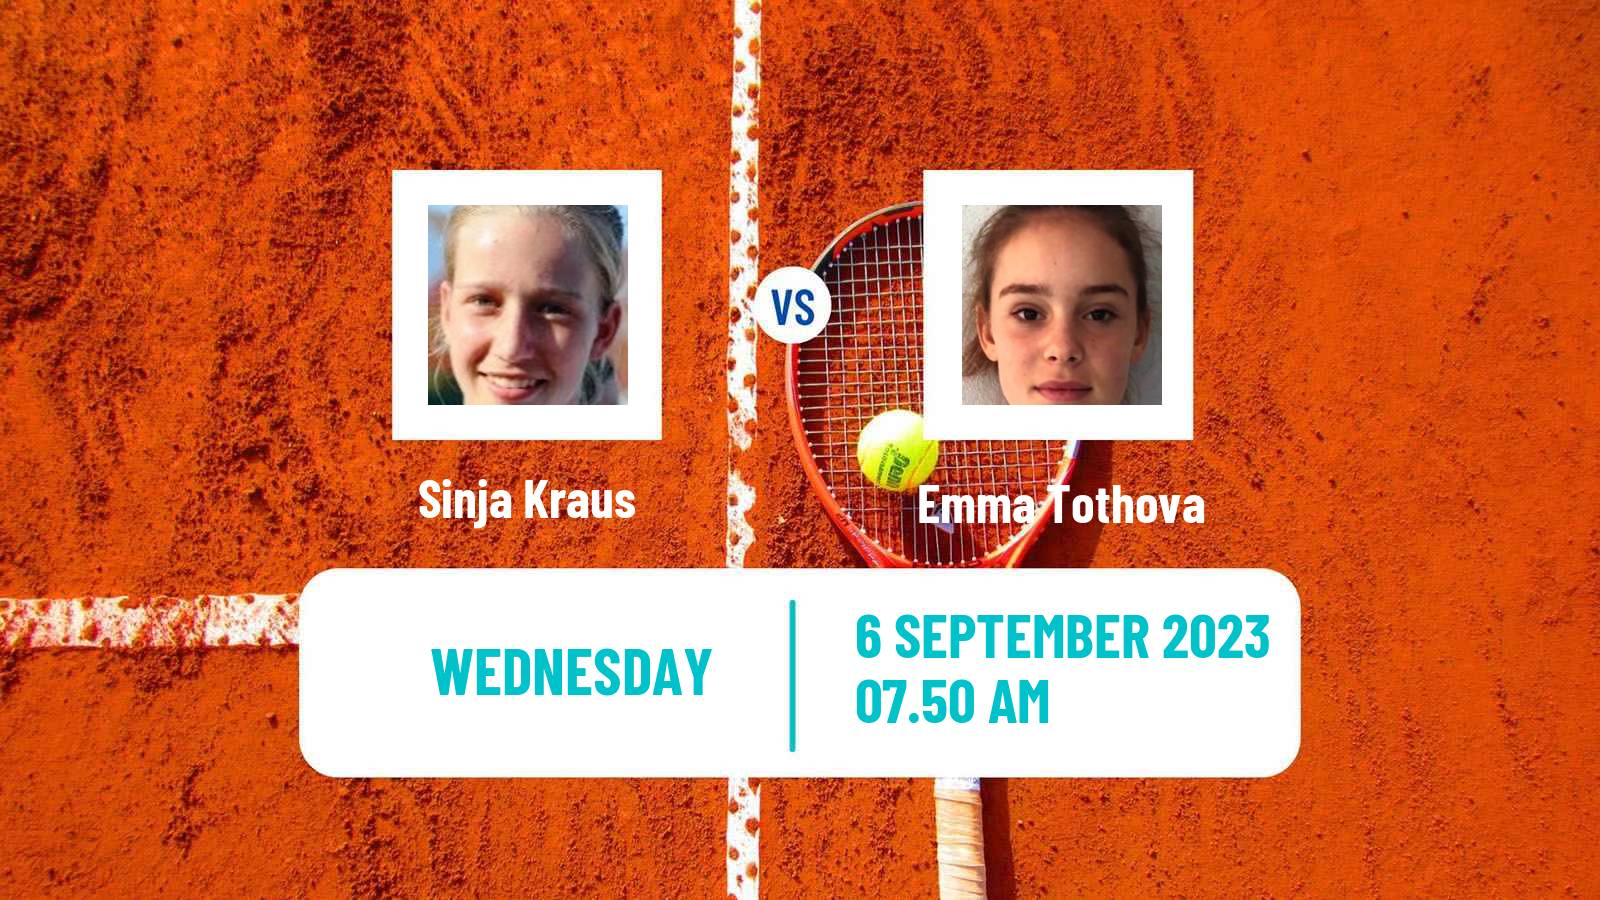 Tennis ITF W60 Vienna Women Sinja Kraus - Emma Tothova